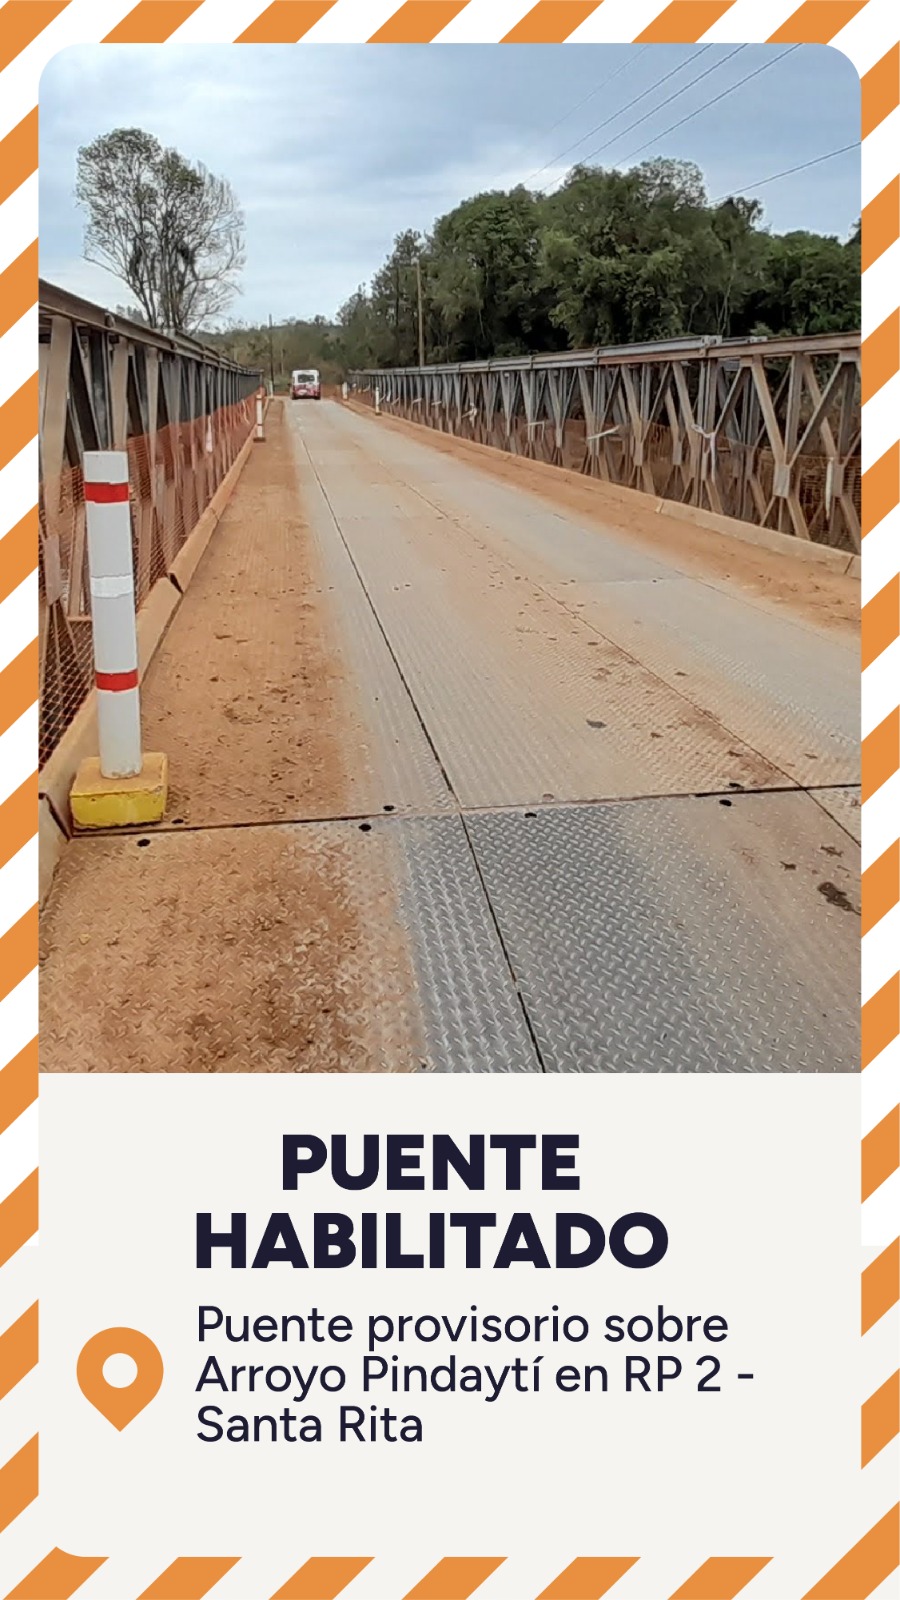 RP 2: Puente arroyo Pindaytí habilitado para vehículos de hasta 10 toneladas imagen-2